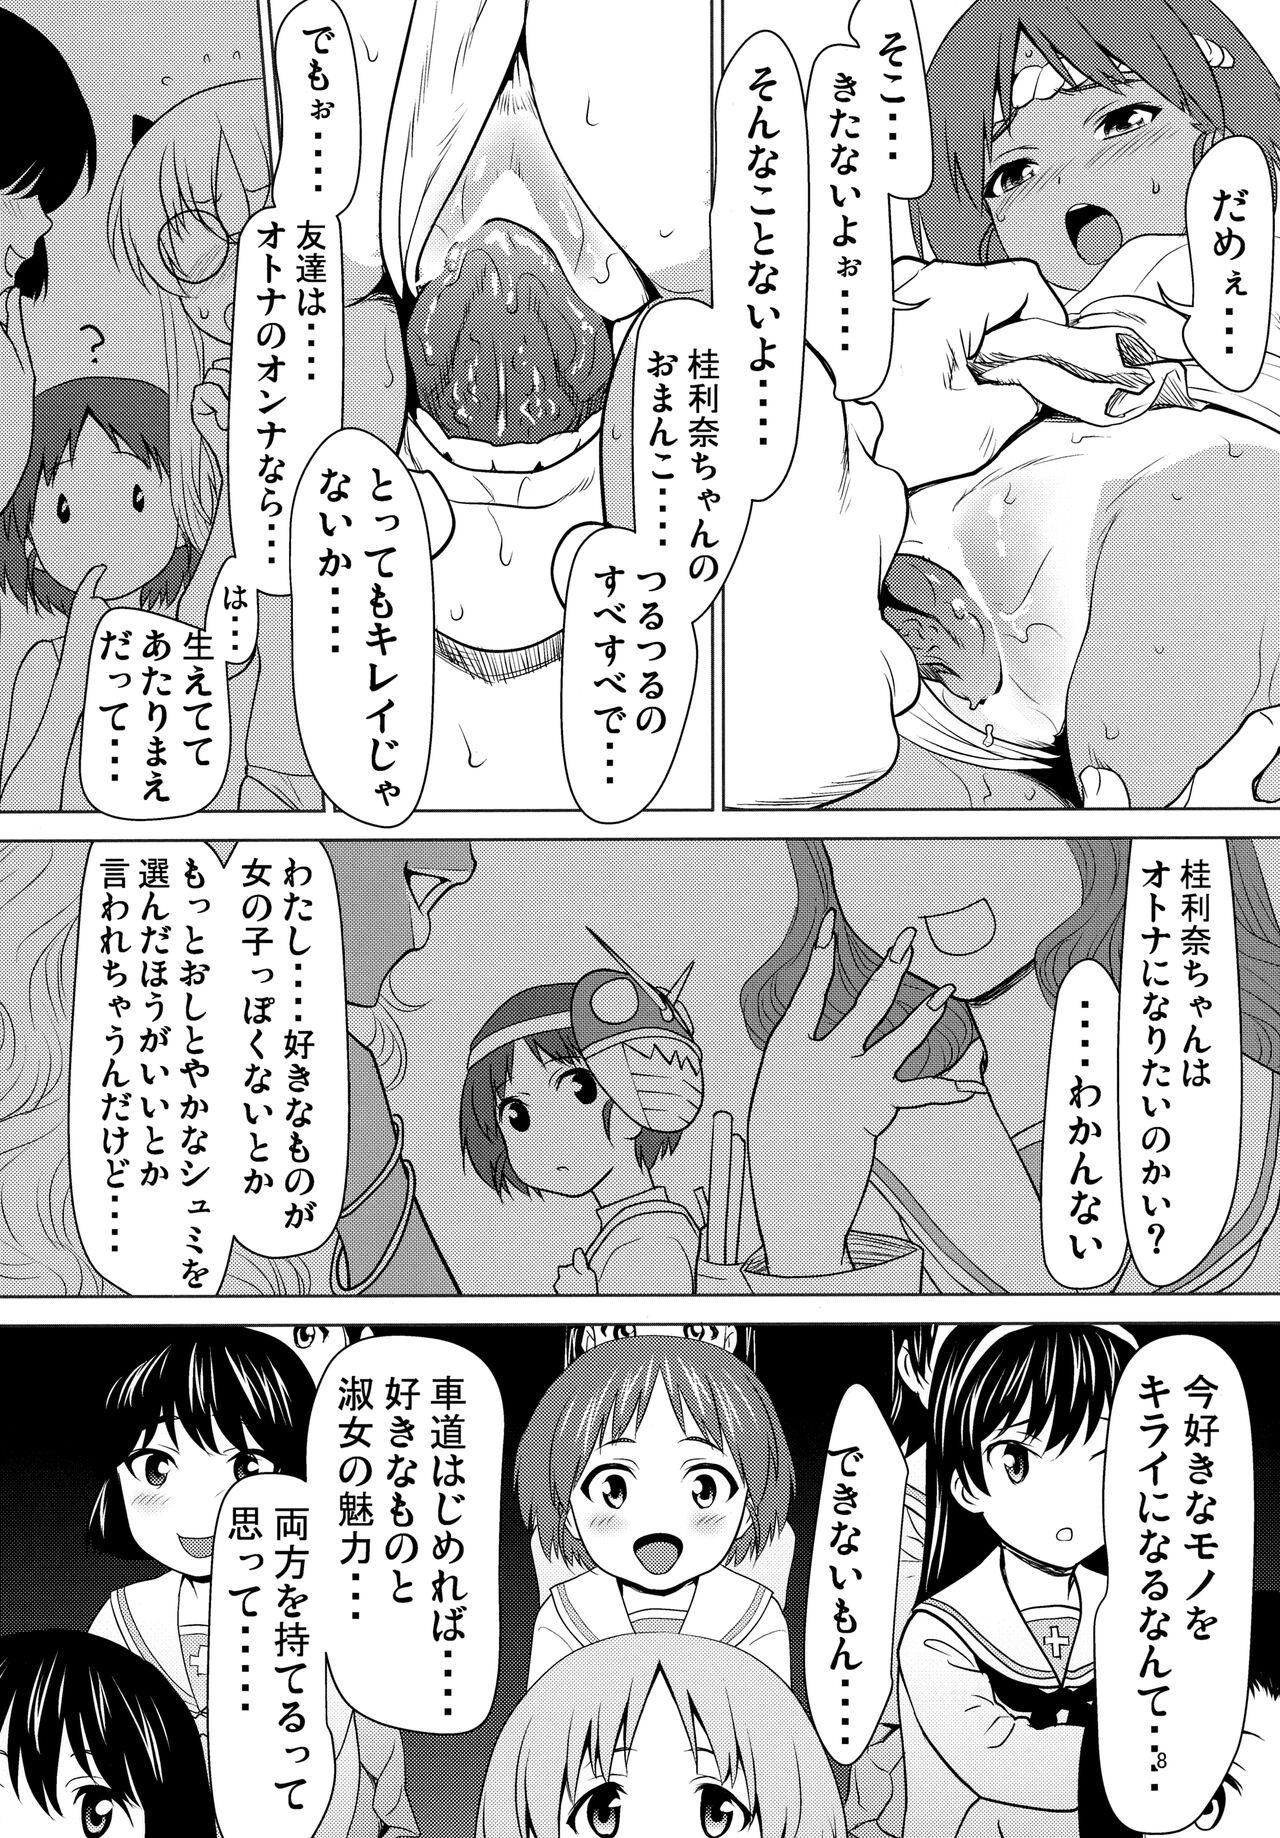 Trio Hiyake Fundoshi no Karina-chan to Monokage de…. - Girls und panzer Assfucking - Page 7